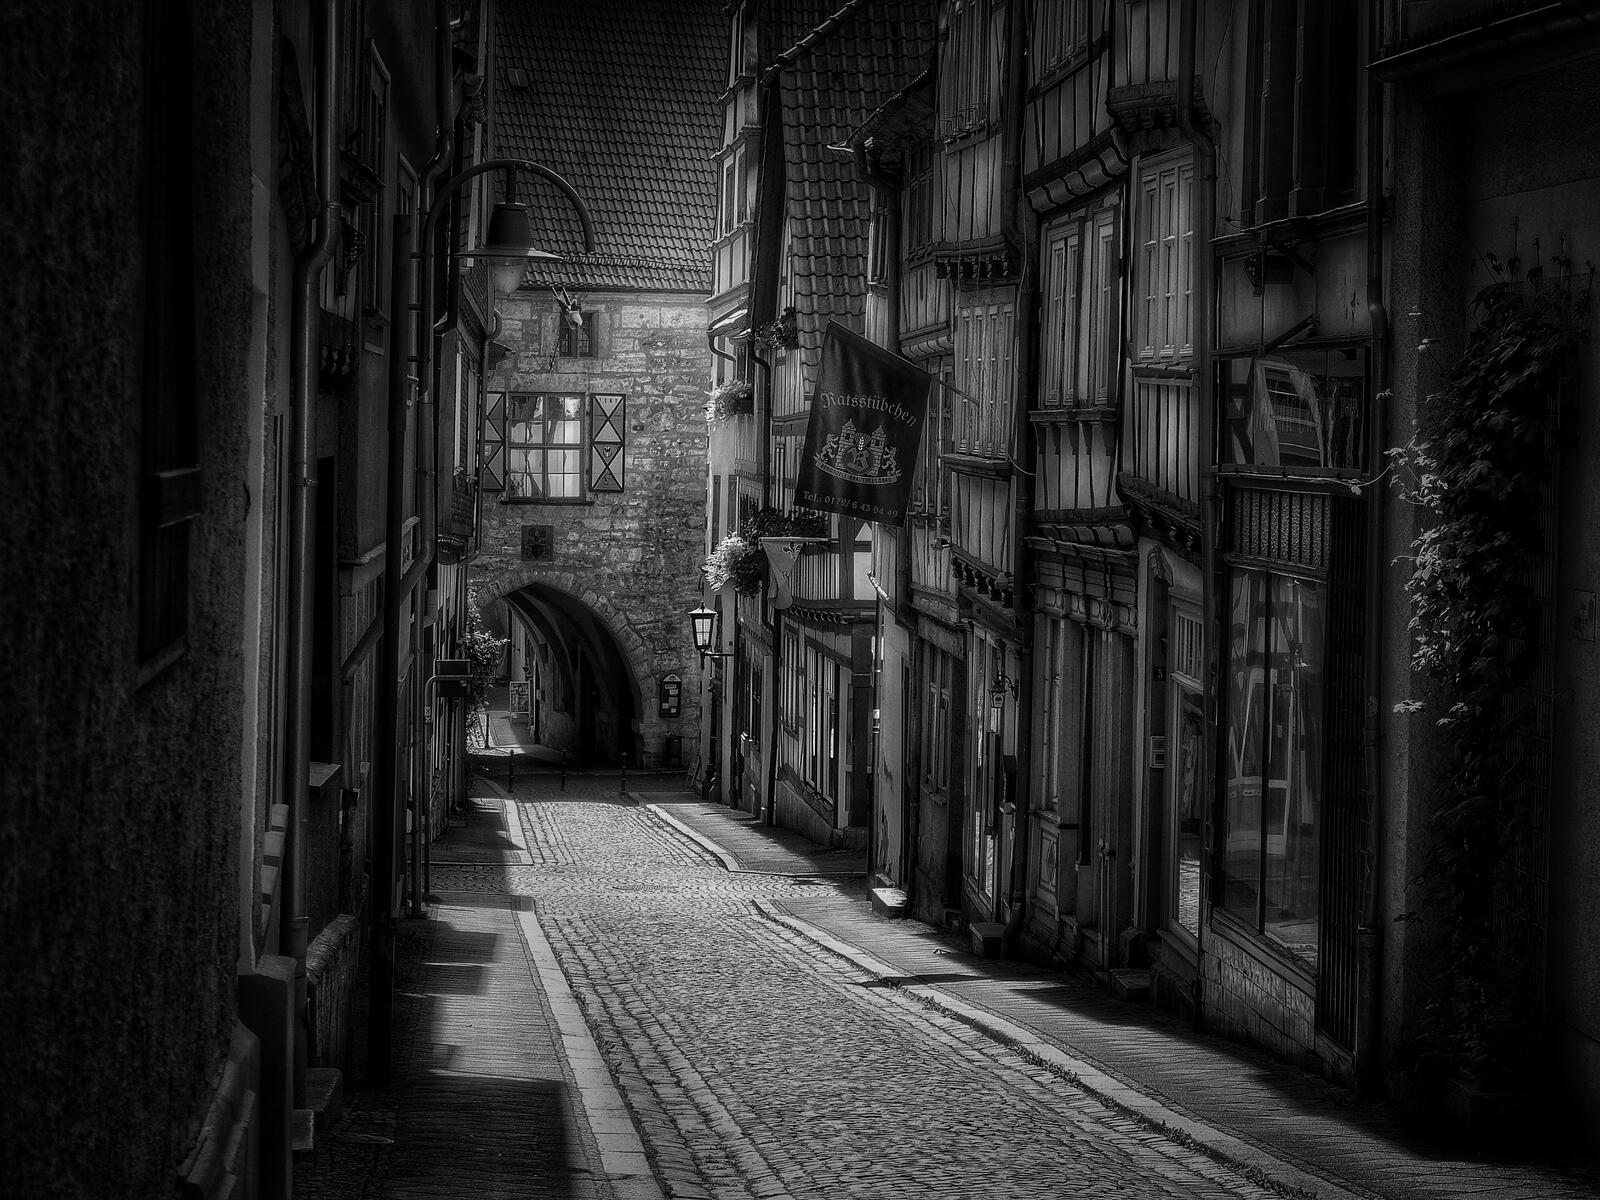 Бесплатное фото Городская улица в старинном городе на монохромном фото